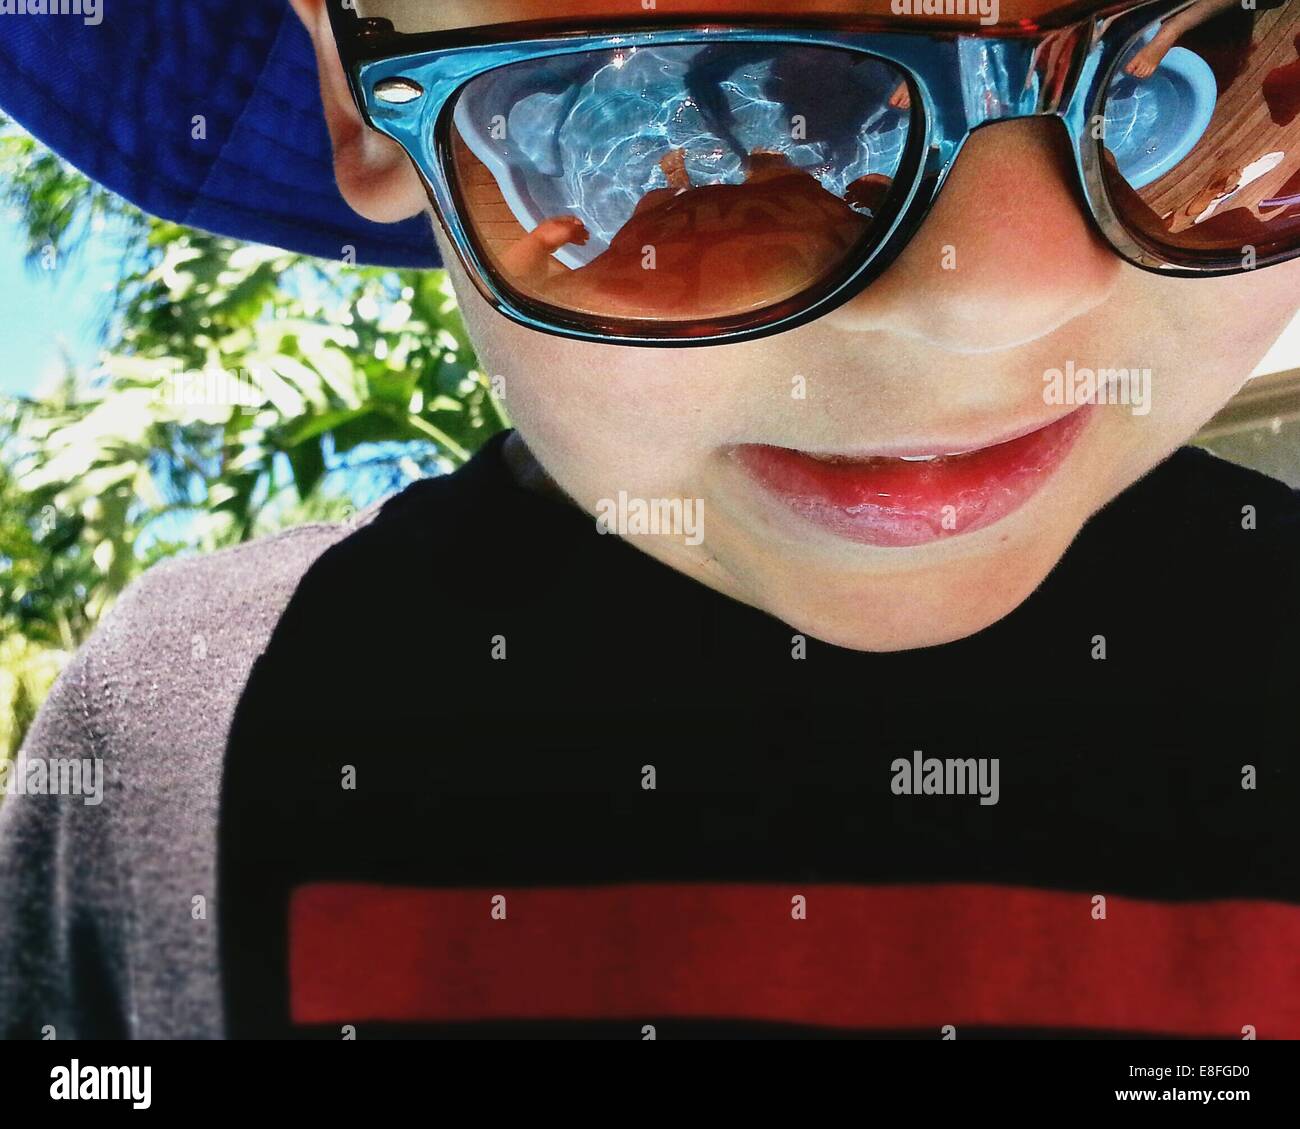 Portrait d'un garçon debout dans une pataugeoire portant des lunettes de soleil Banque D'Images